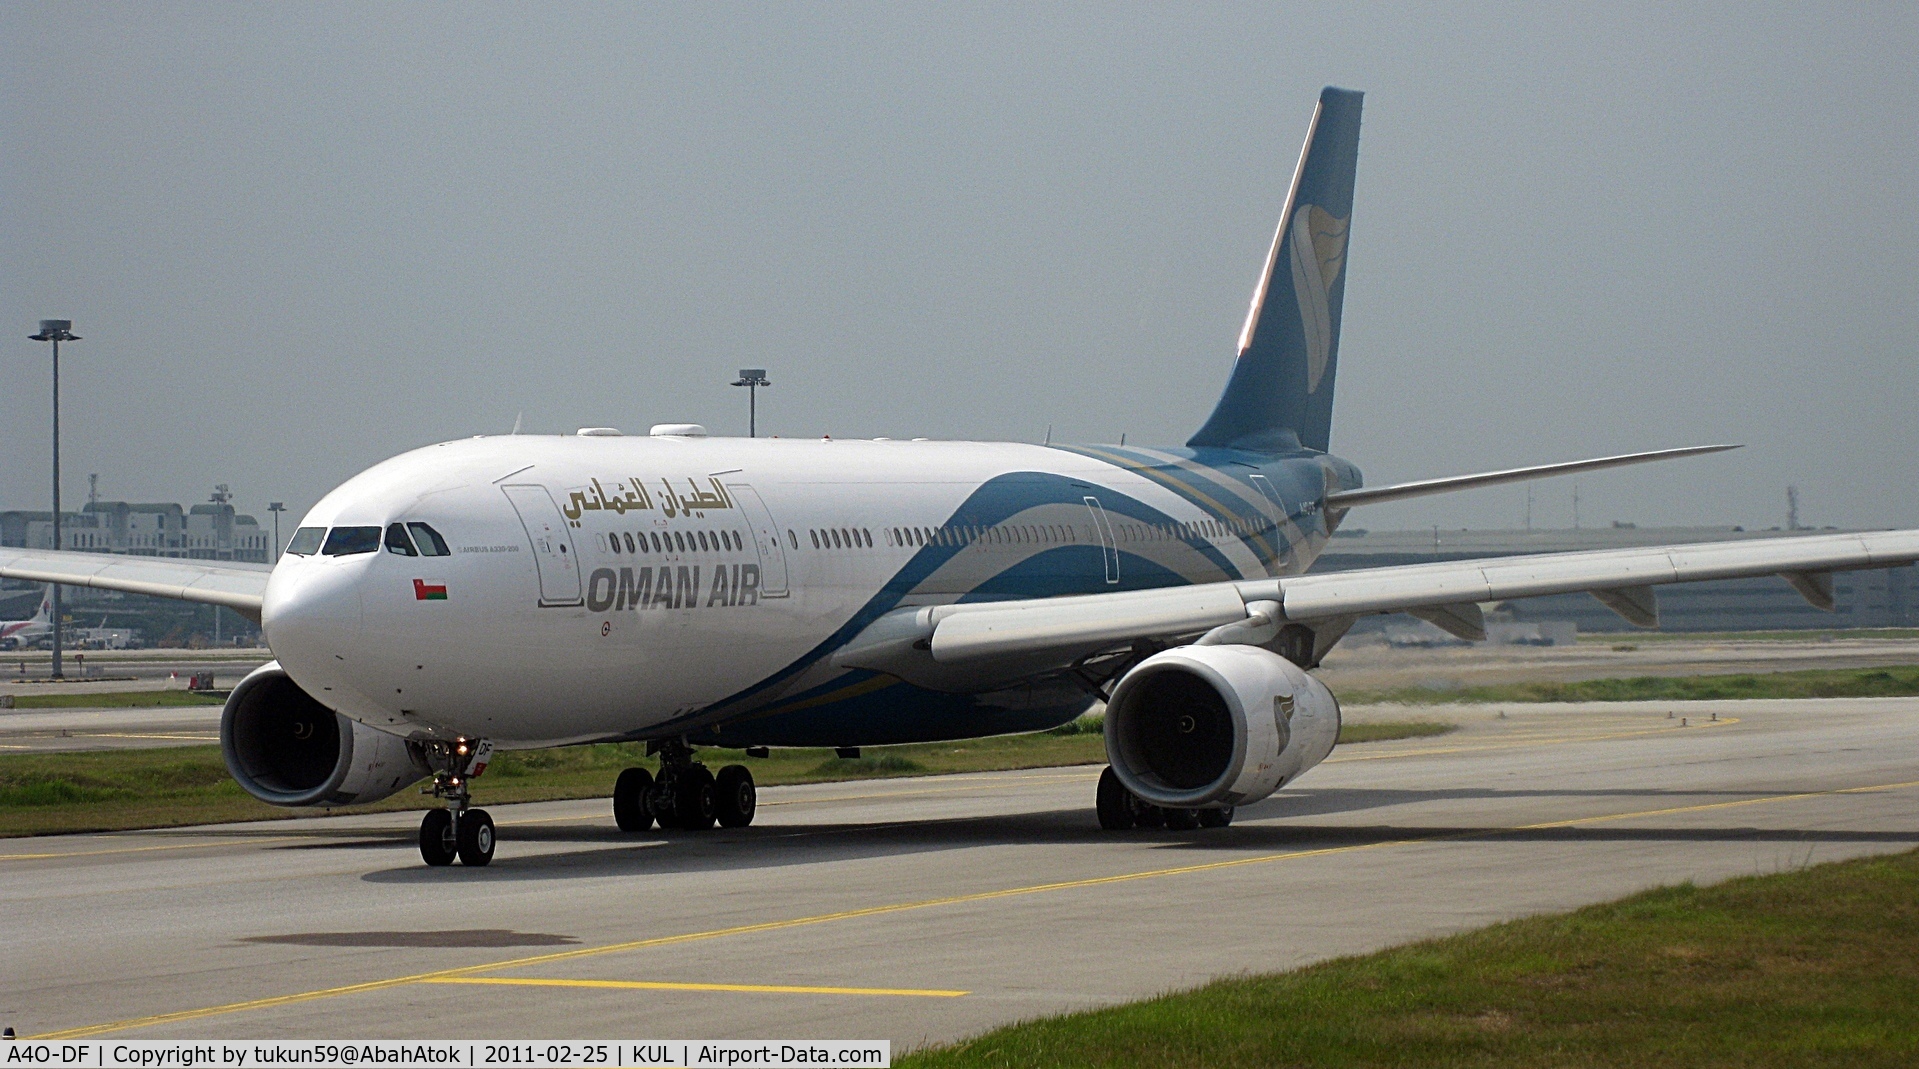 A4O-DF, 2010 Airbus A330-243 C/N 1120, Oman Air